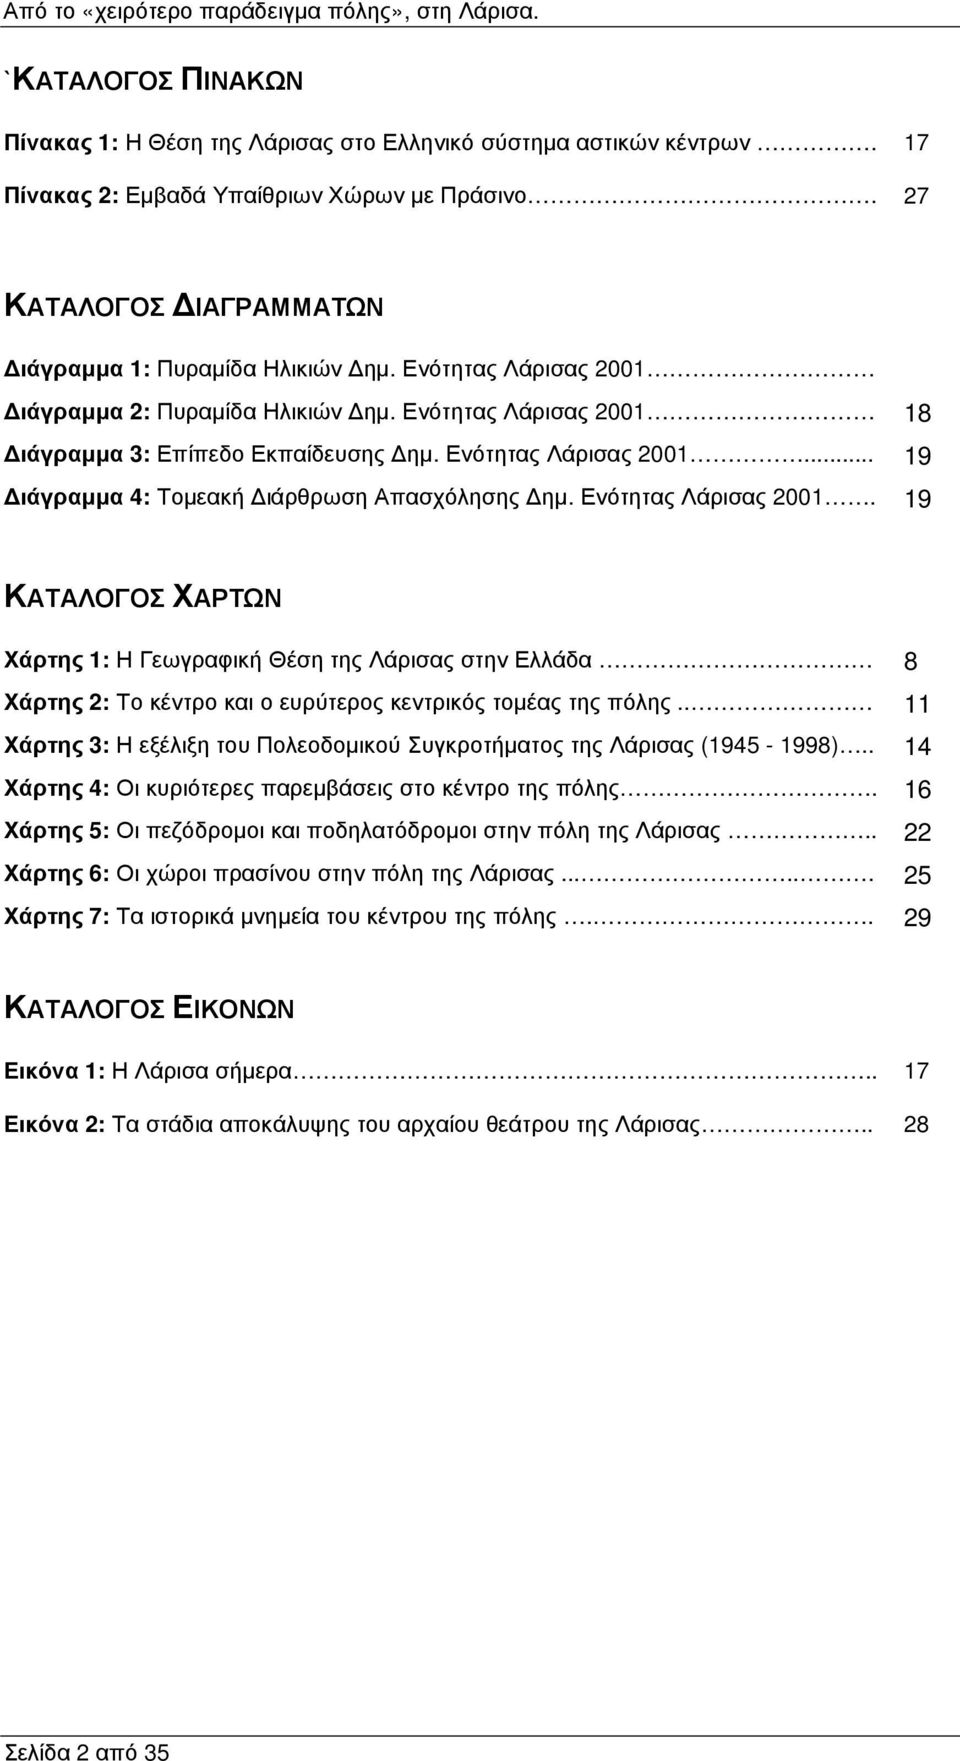 Ενότητας Λάρισας 2001. 19 ΚΑΤΑΛΟΓΟΣ ΧΑΡΤΩΝ Χάρτης 1: Η Γεωγραφική Θέση της Λάρισας στην Ελλάδα 8 Χάρτης 2: Το κέντρο και ο ευρύτερος κεντρικός τοµέας της πόλης.